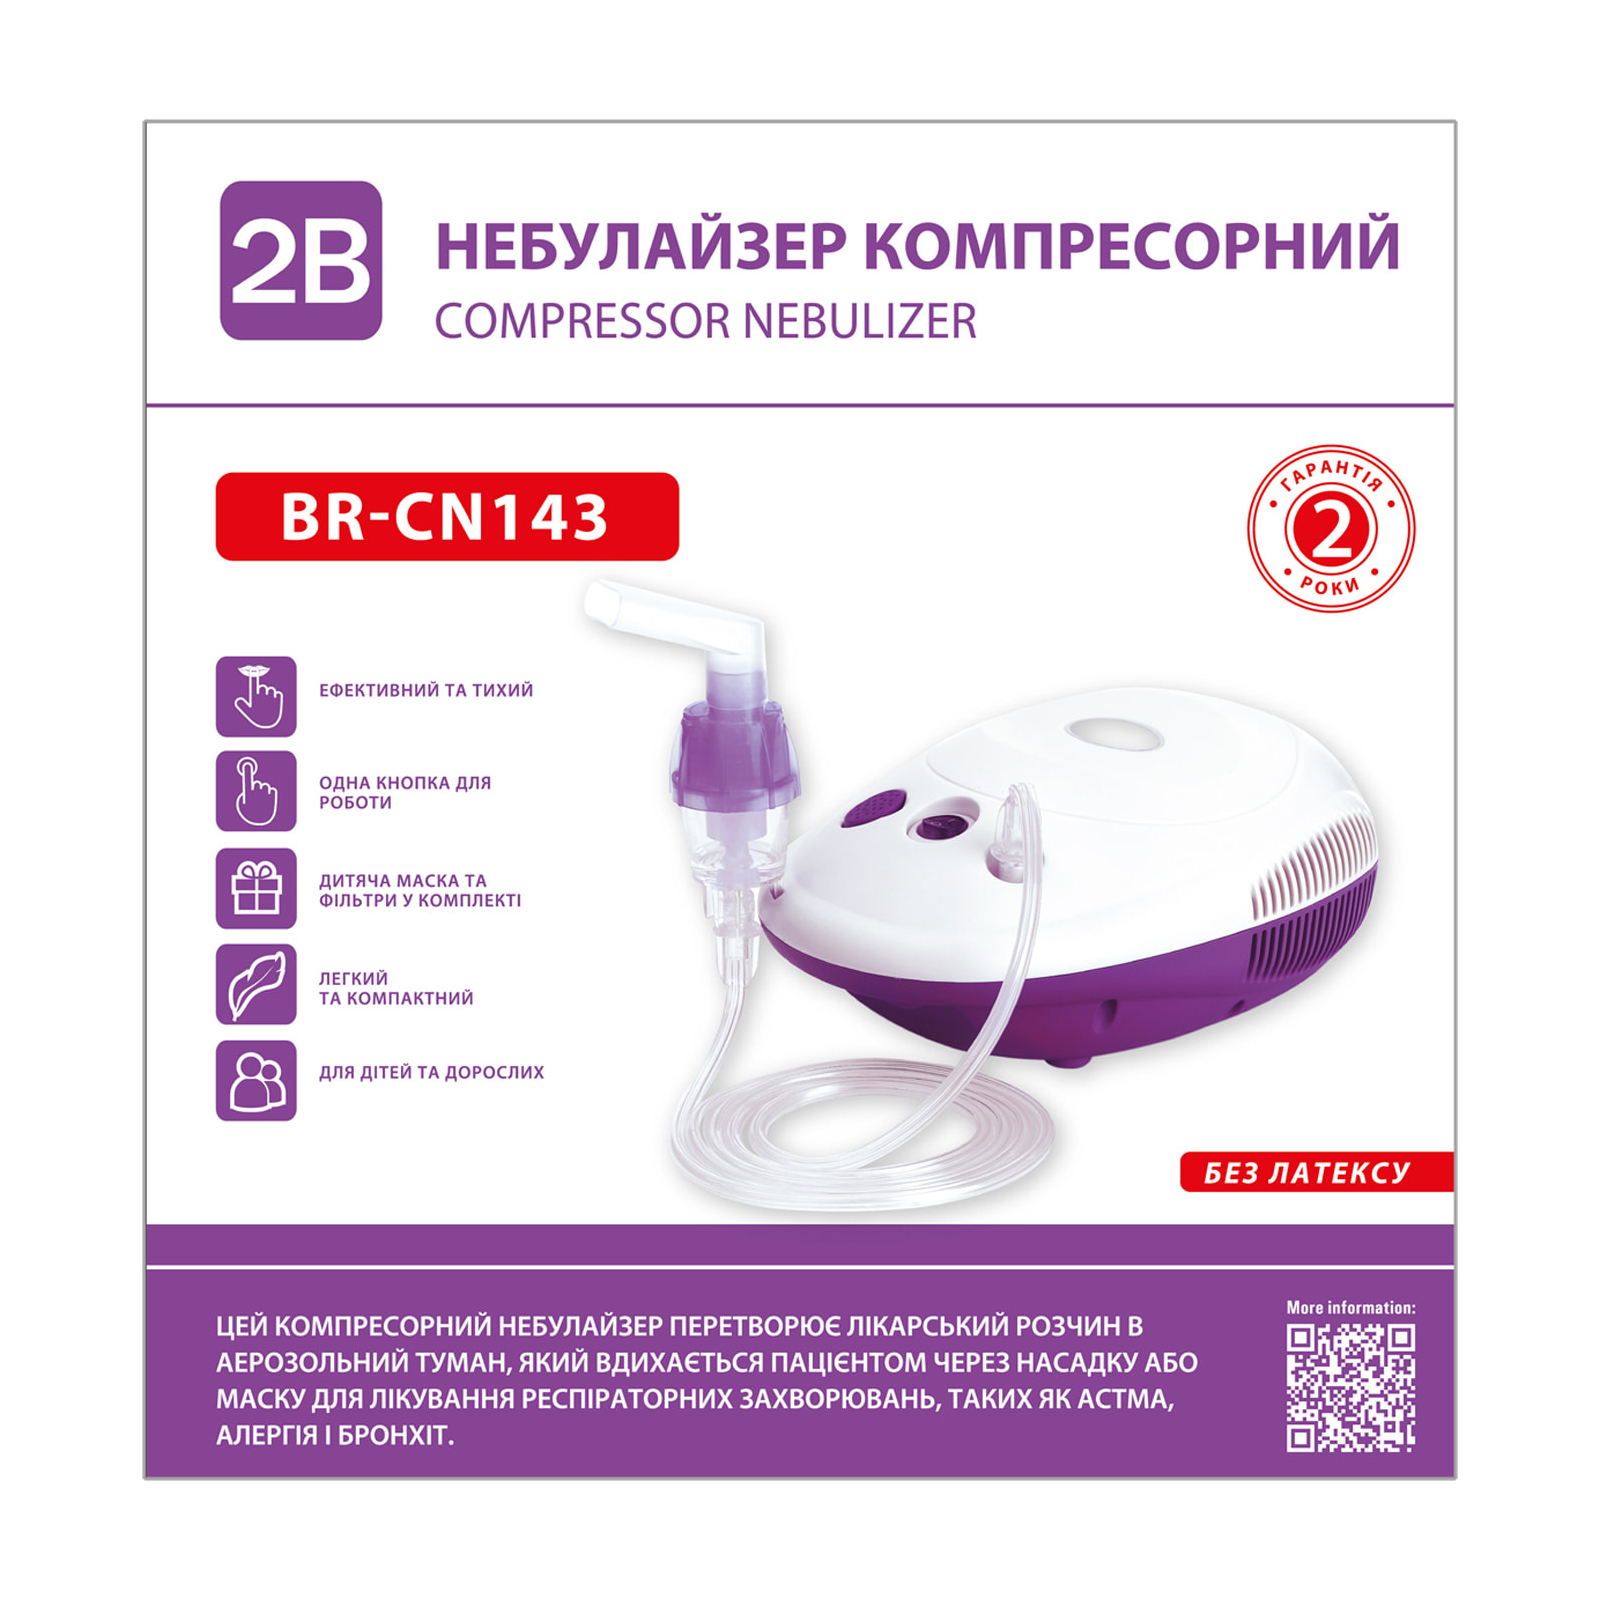 Небулайзер 2B компрессорный, модель BR-CN143 (7640162327602) изображение 2